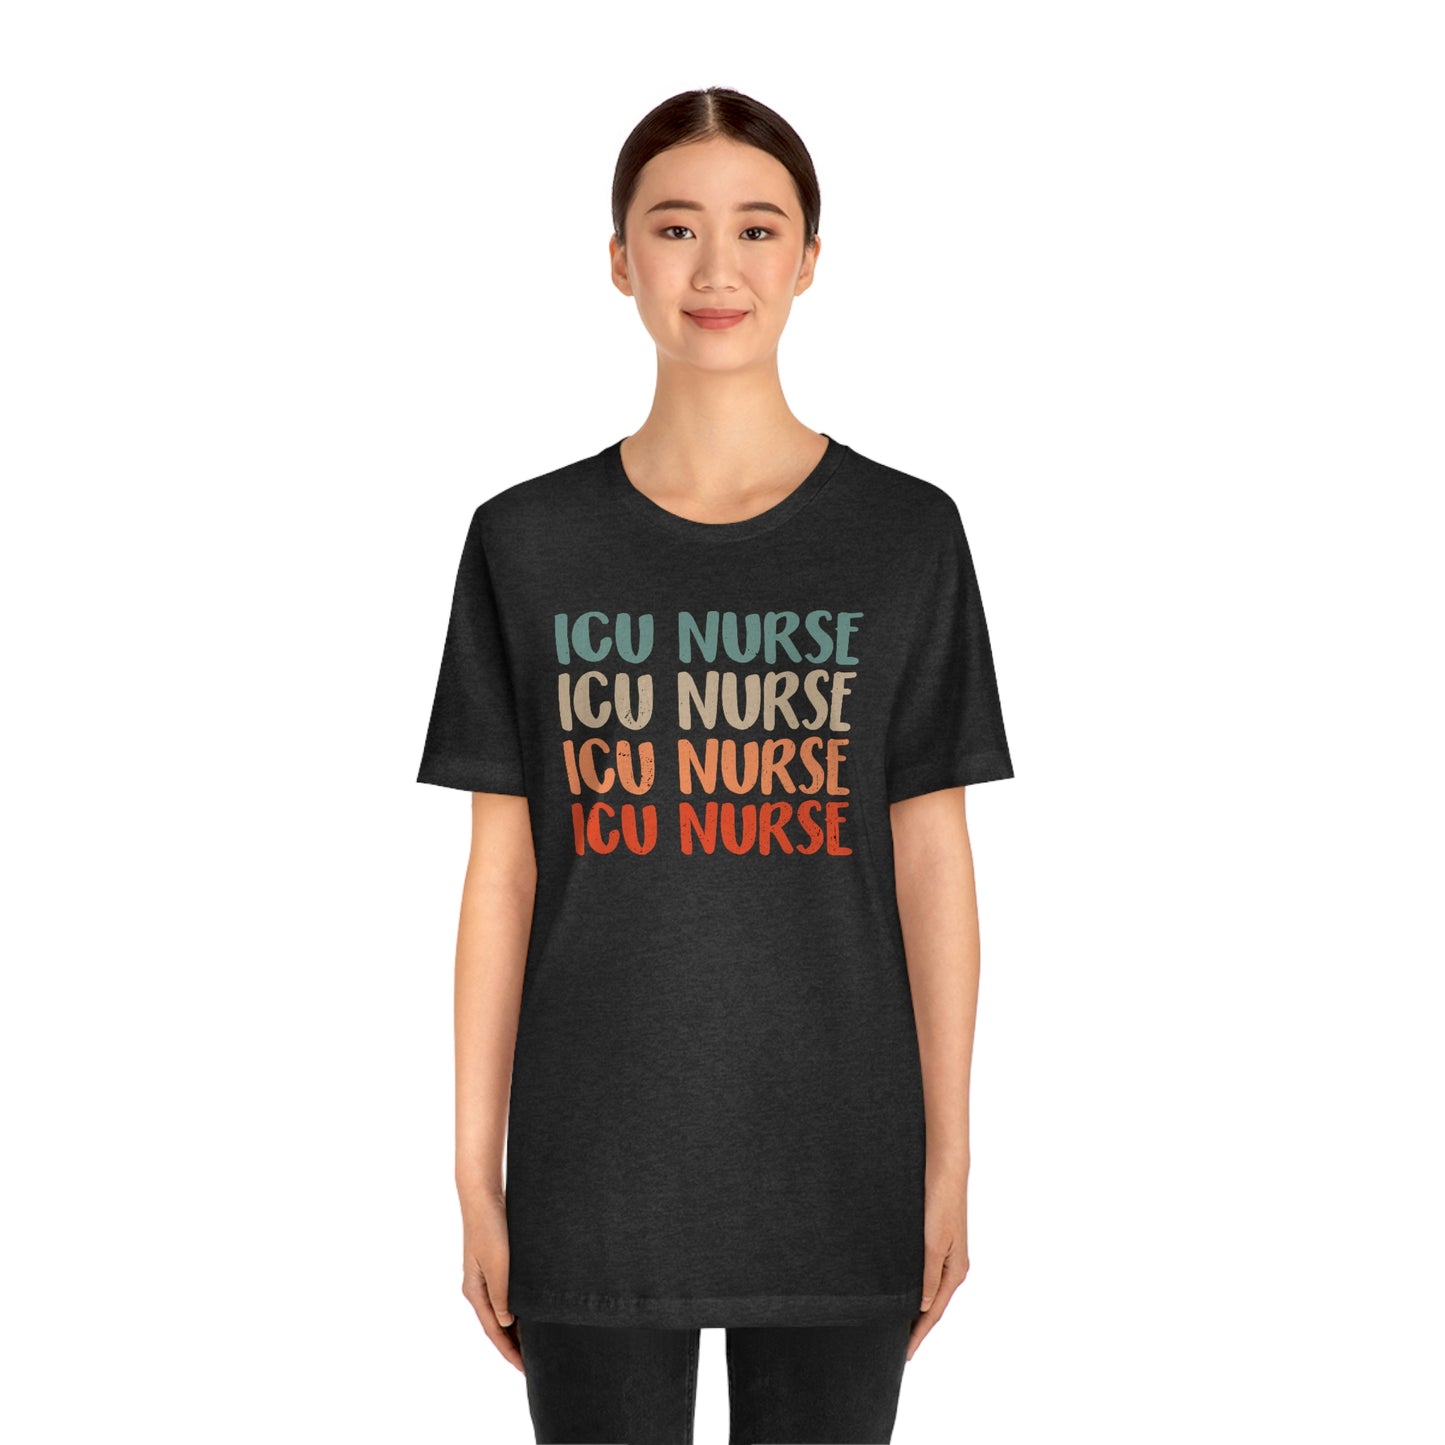 Intensive Care Unit Nurse Shirt, ICU Nurse Shirt, ICU Nurse Floral Shirt, Nurse Gift, Nurse Life Shirt, Future Nurse, Nurse Graduation Shirt